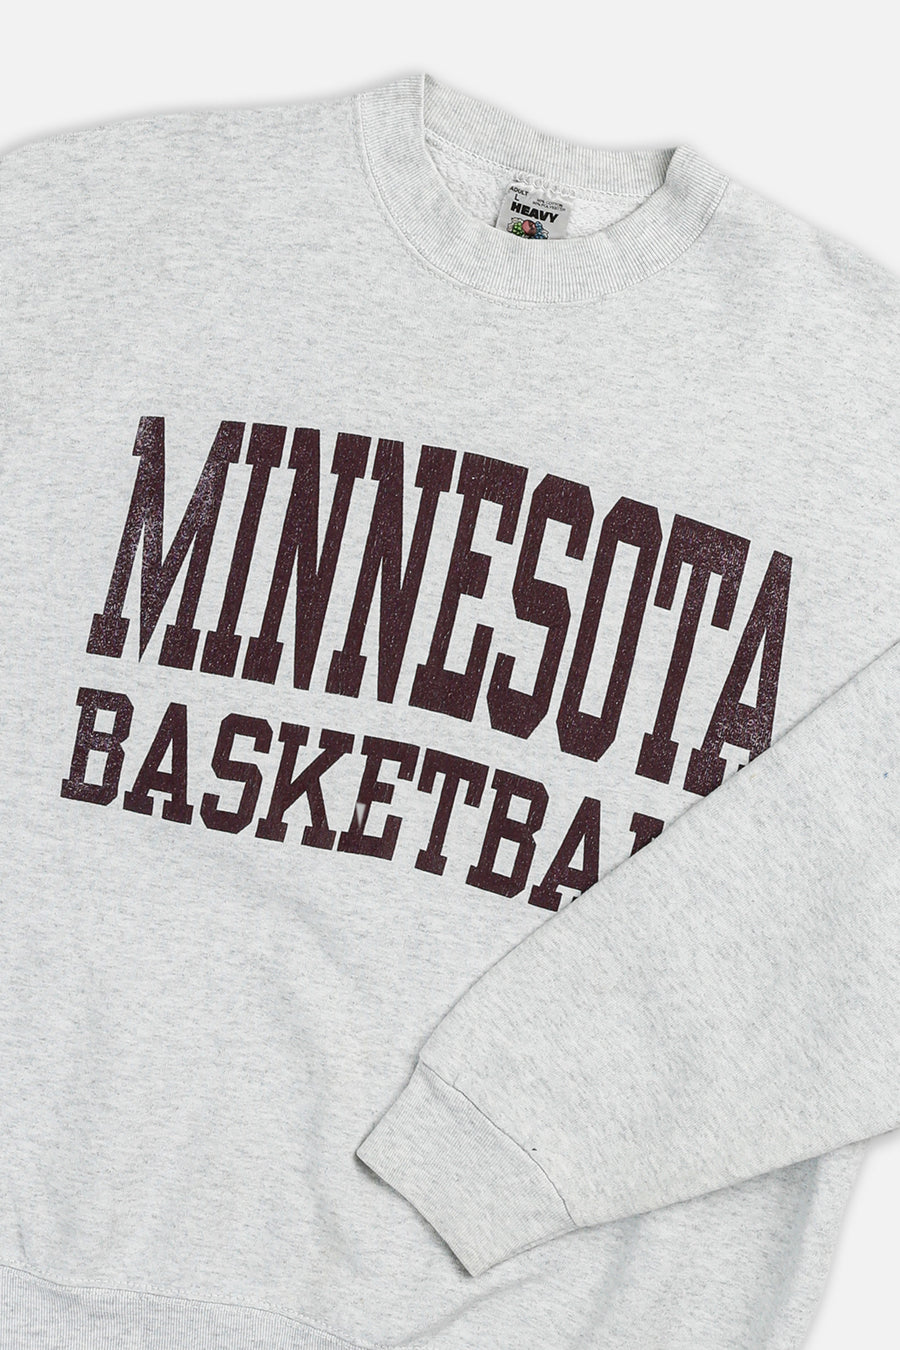 Vintage Minnesota Basketball Sweatshirt - L